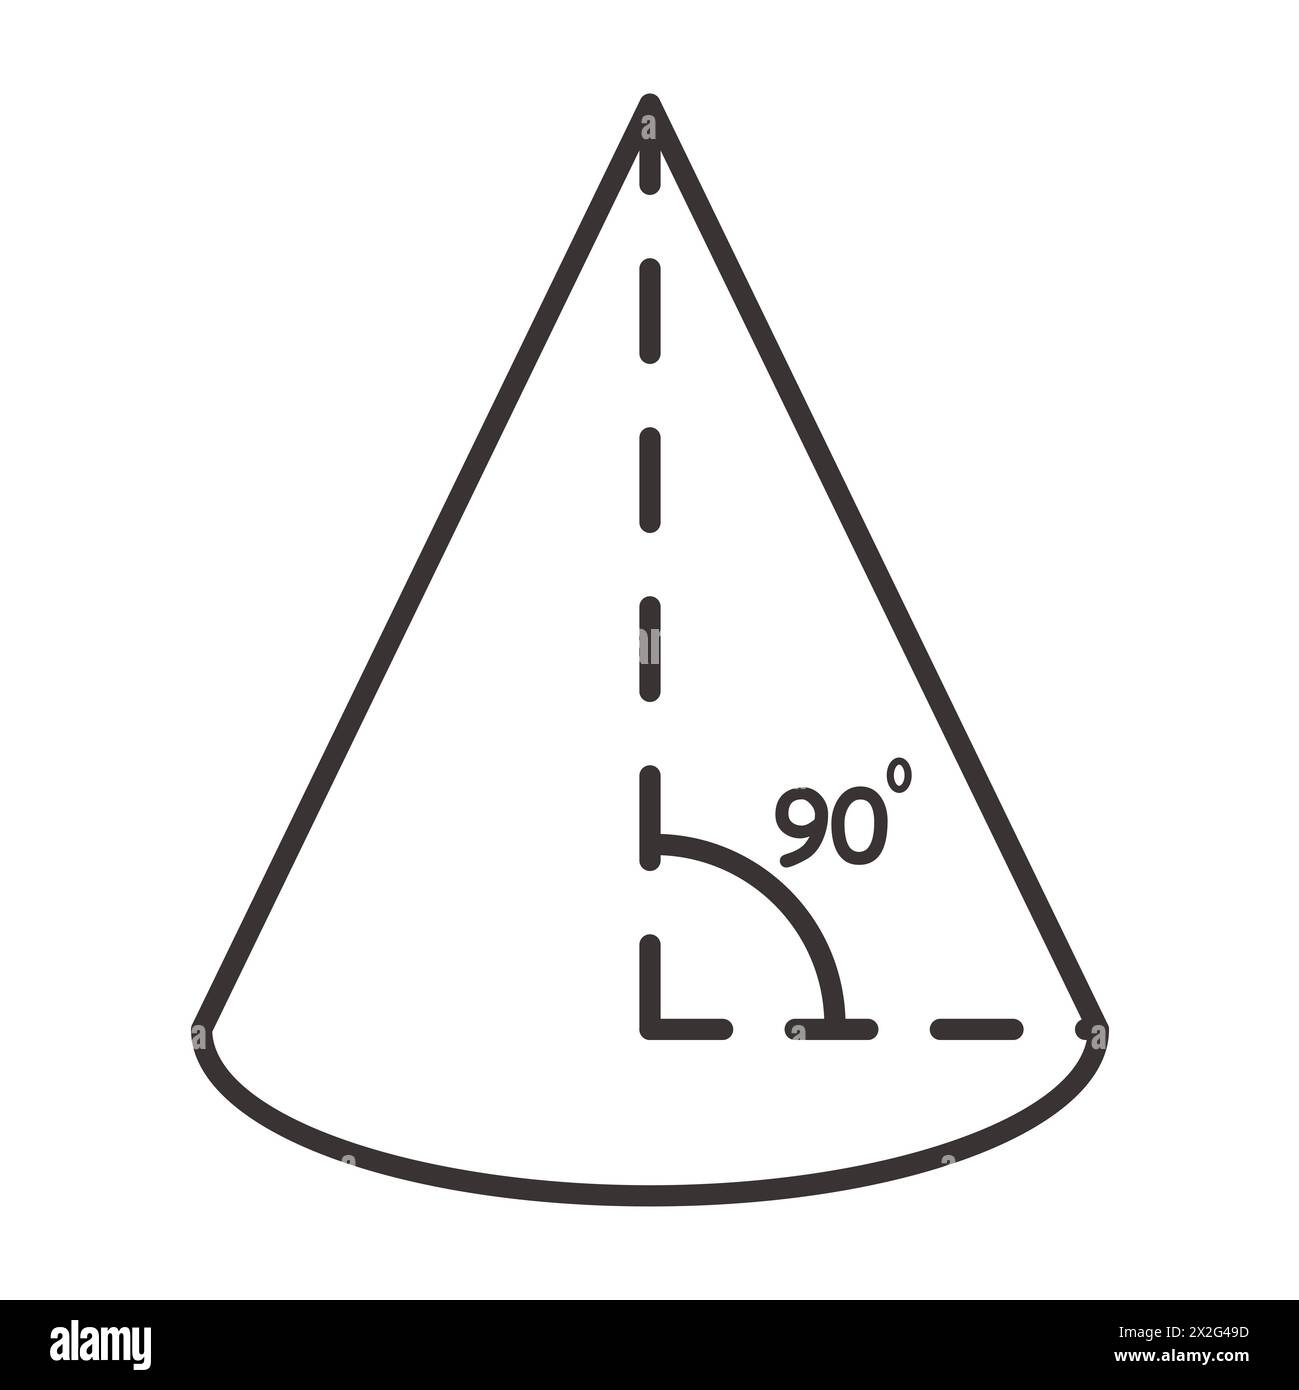 Cono geometrico con triangolo interno su sfondo bianco. Illustrazione del vettore di forma. Foto Stock